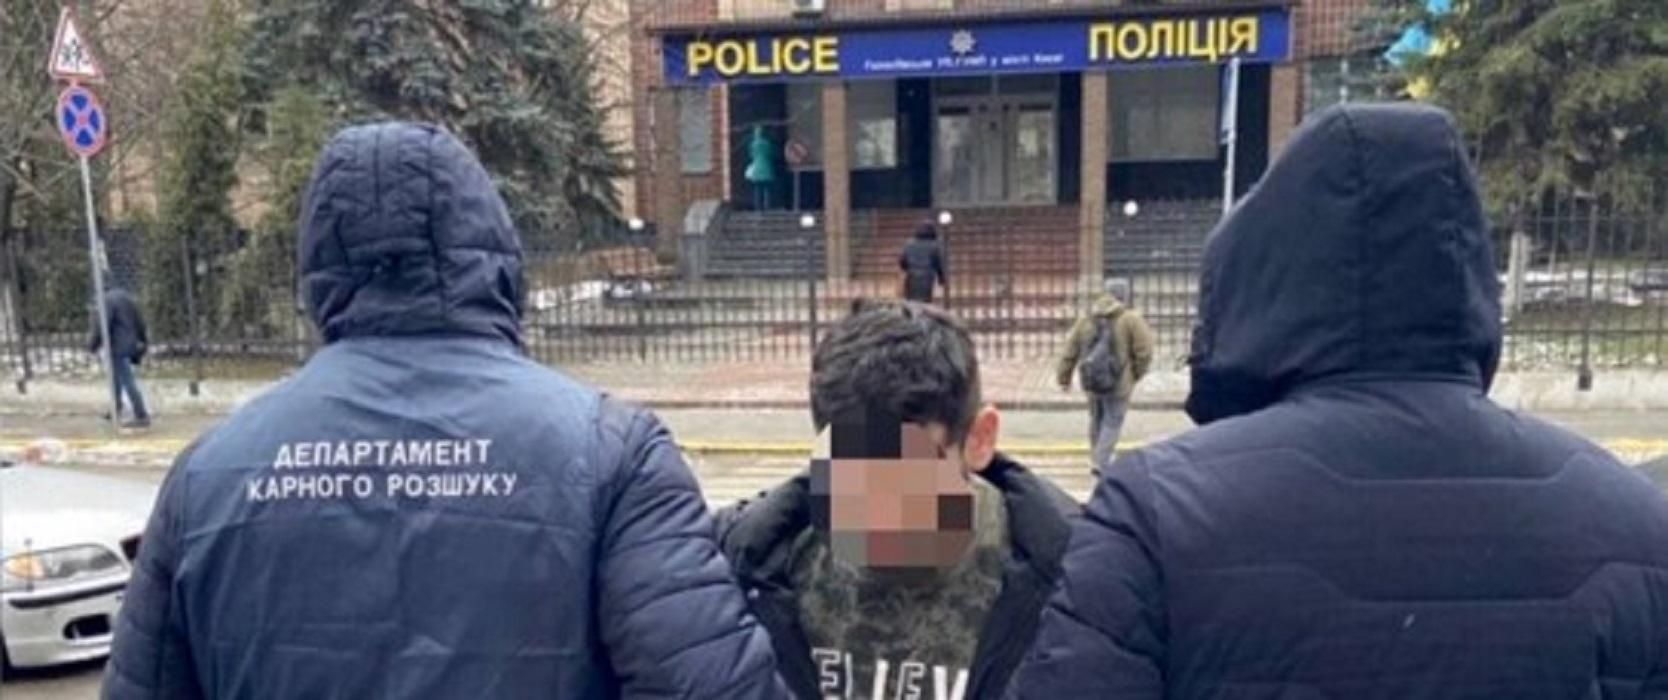 У Голосіїві затримали іноземця, який перебував у міжнародному розшуку - Київ